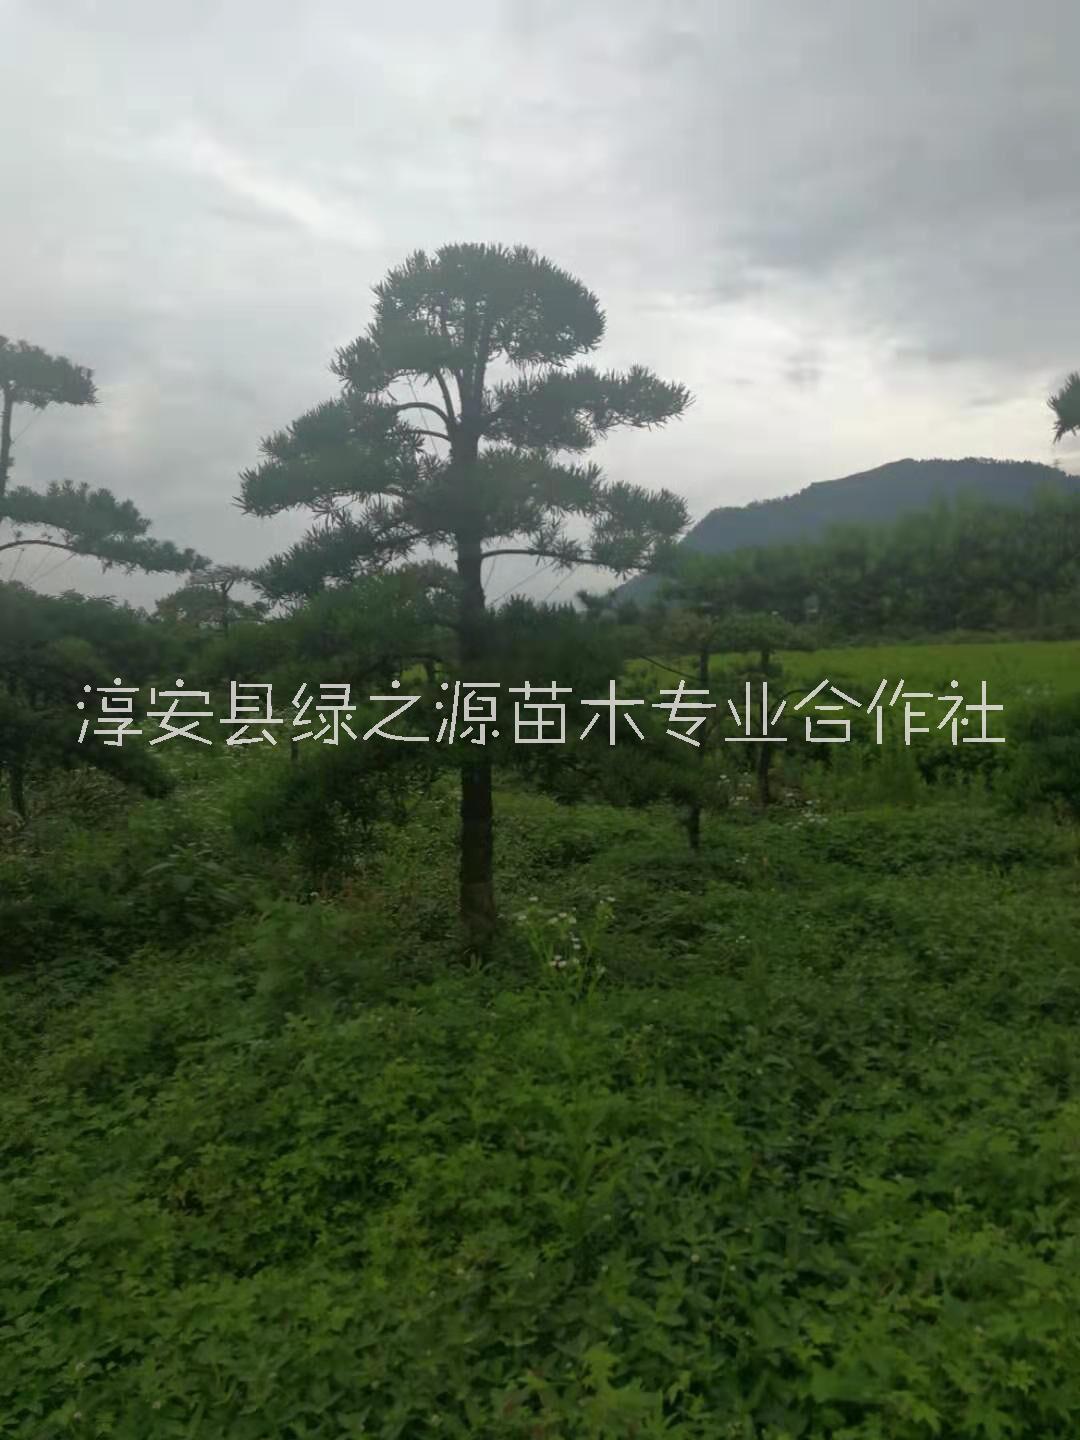 杭州市造型罗汉松树厂家浙江造型罗汉松树苗木种植基地批发价格